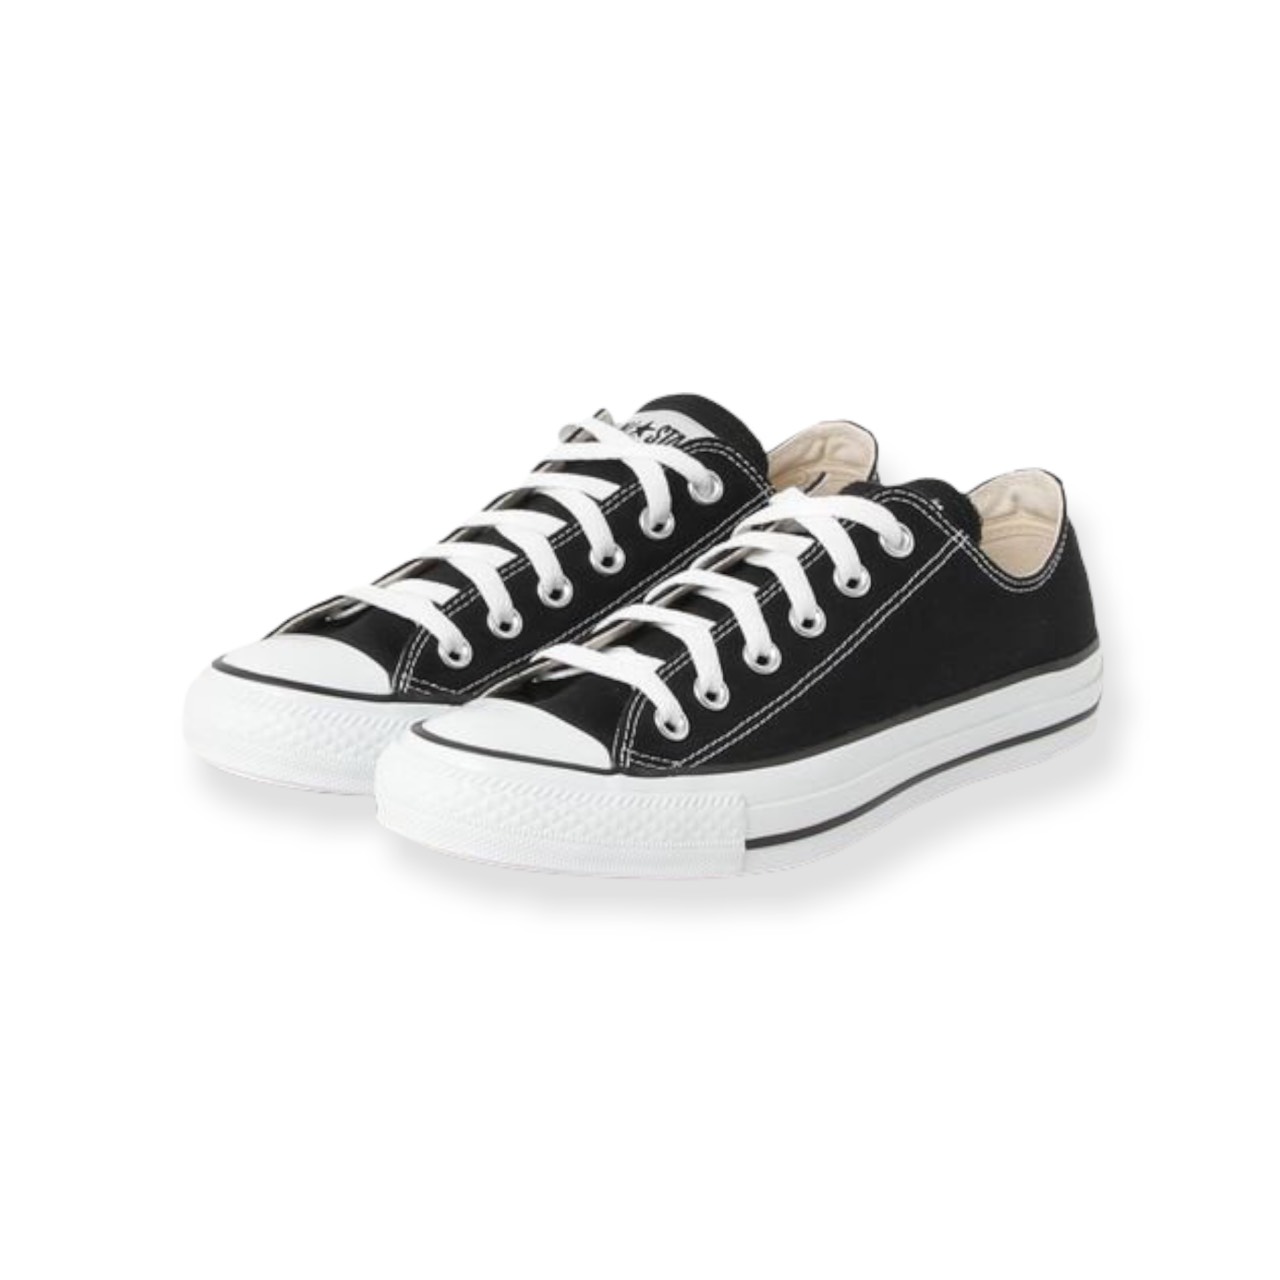 Giày Converse classic black white | giày converse cổ thấp đen trắng